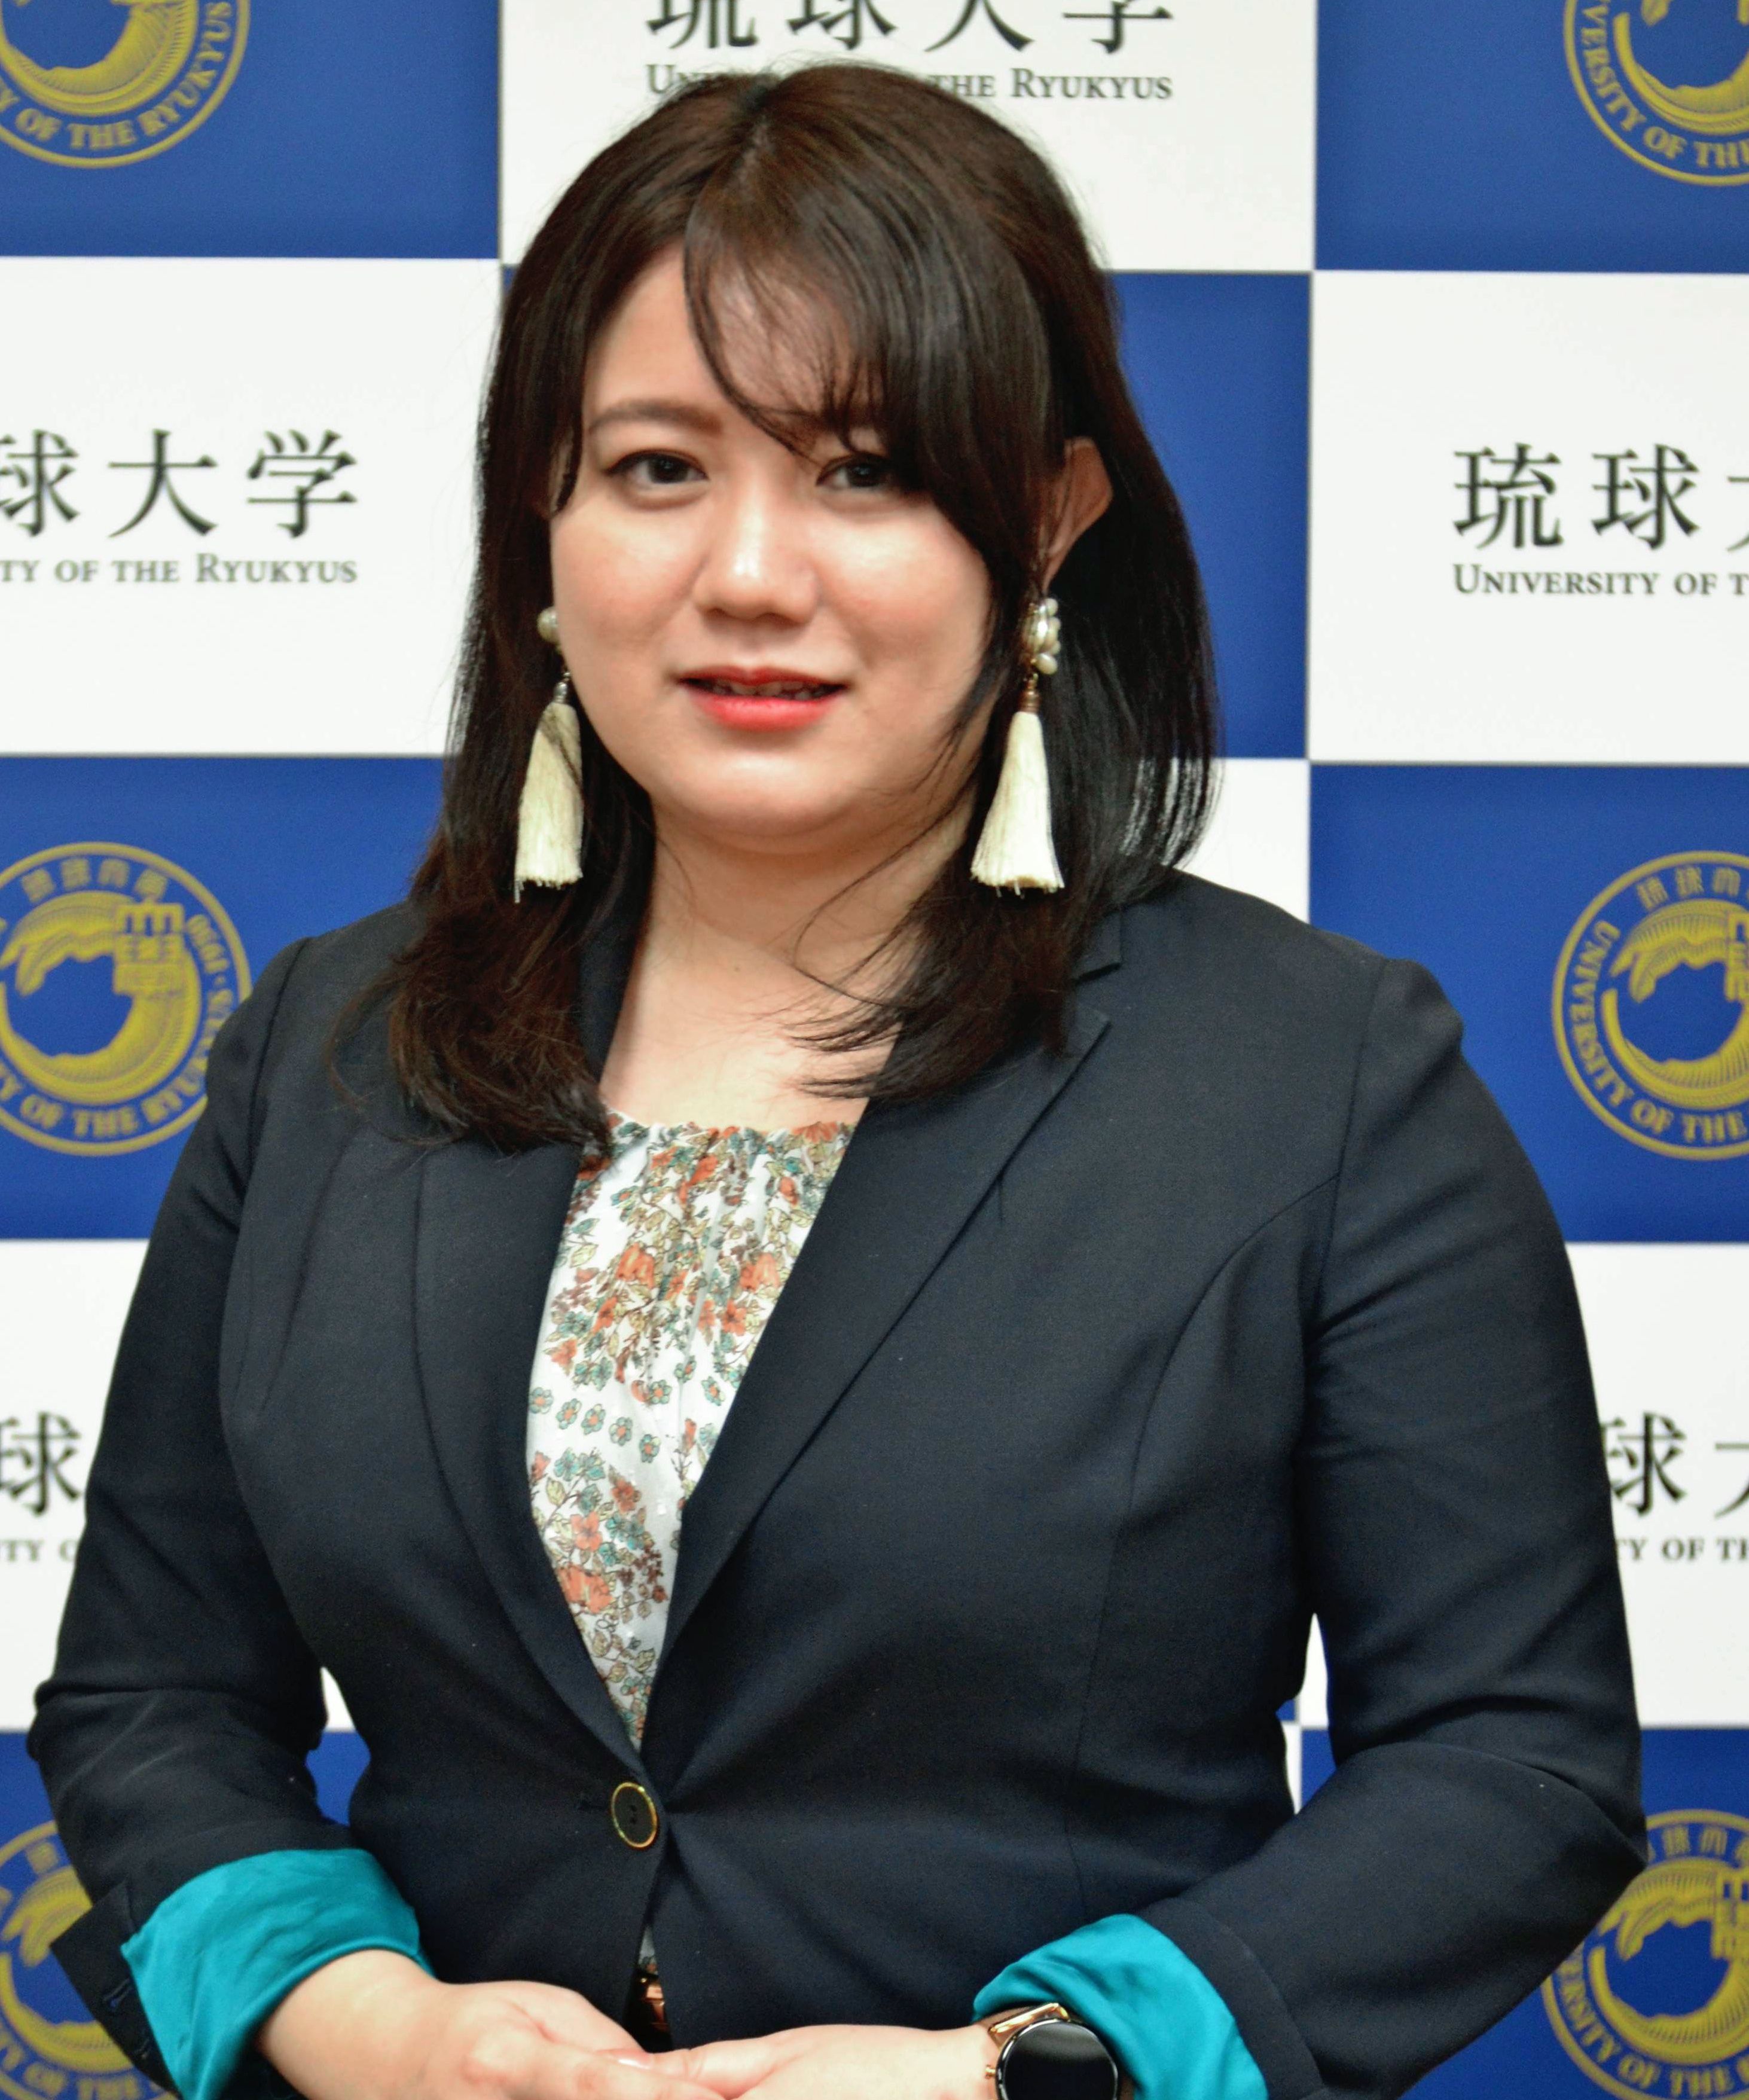 琉球大学教授にベンチャー創業者の37歳女性が就任 工学部で初めて 沖縄タイムス プラス ニュース 沖縄タイムス プラス